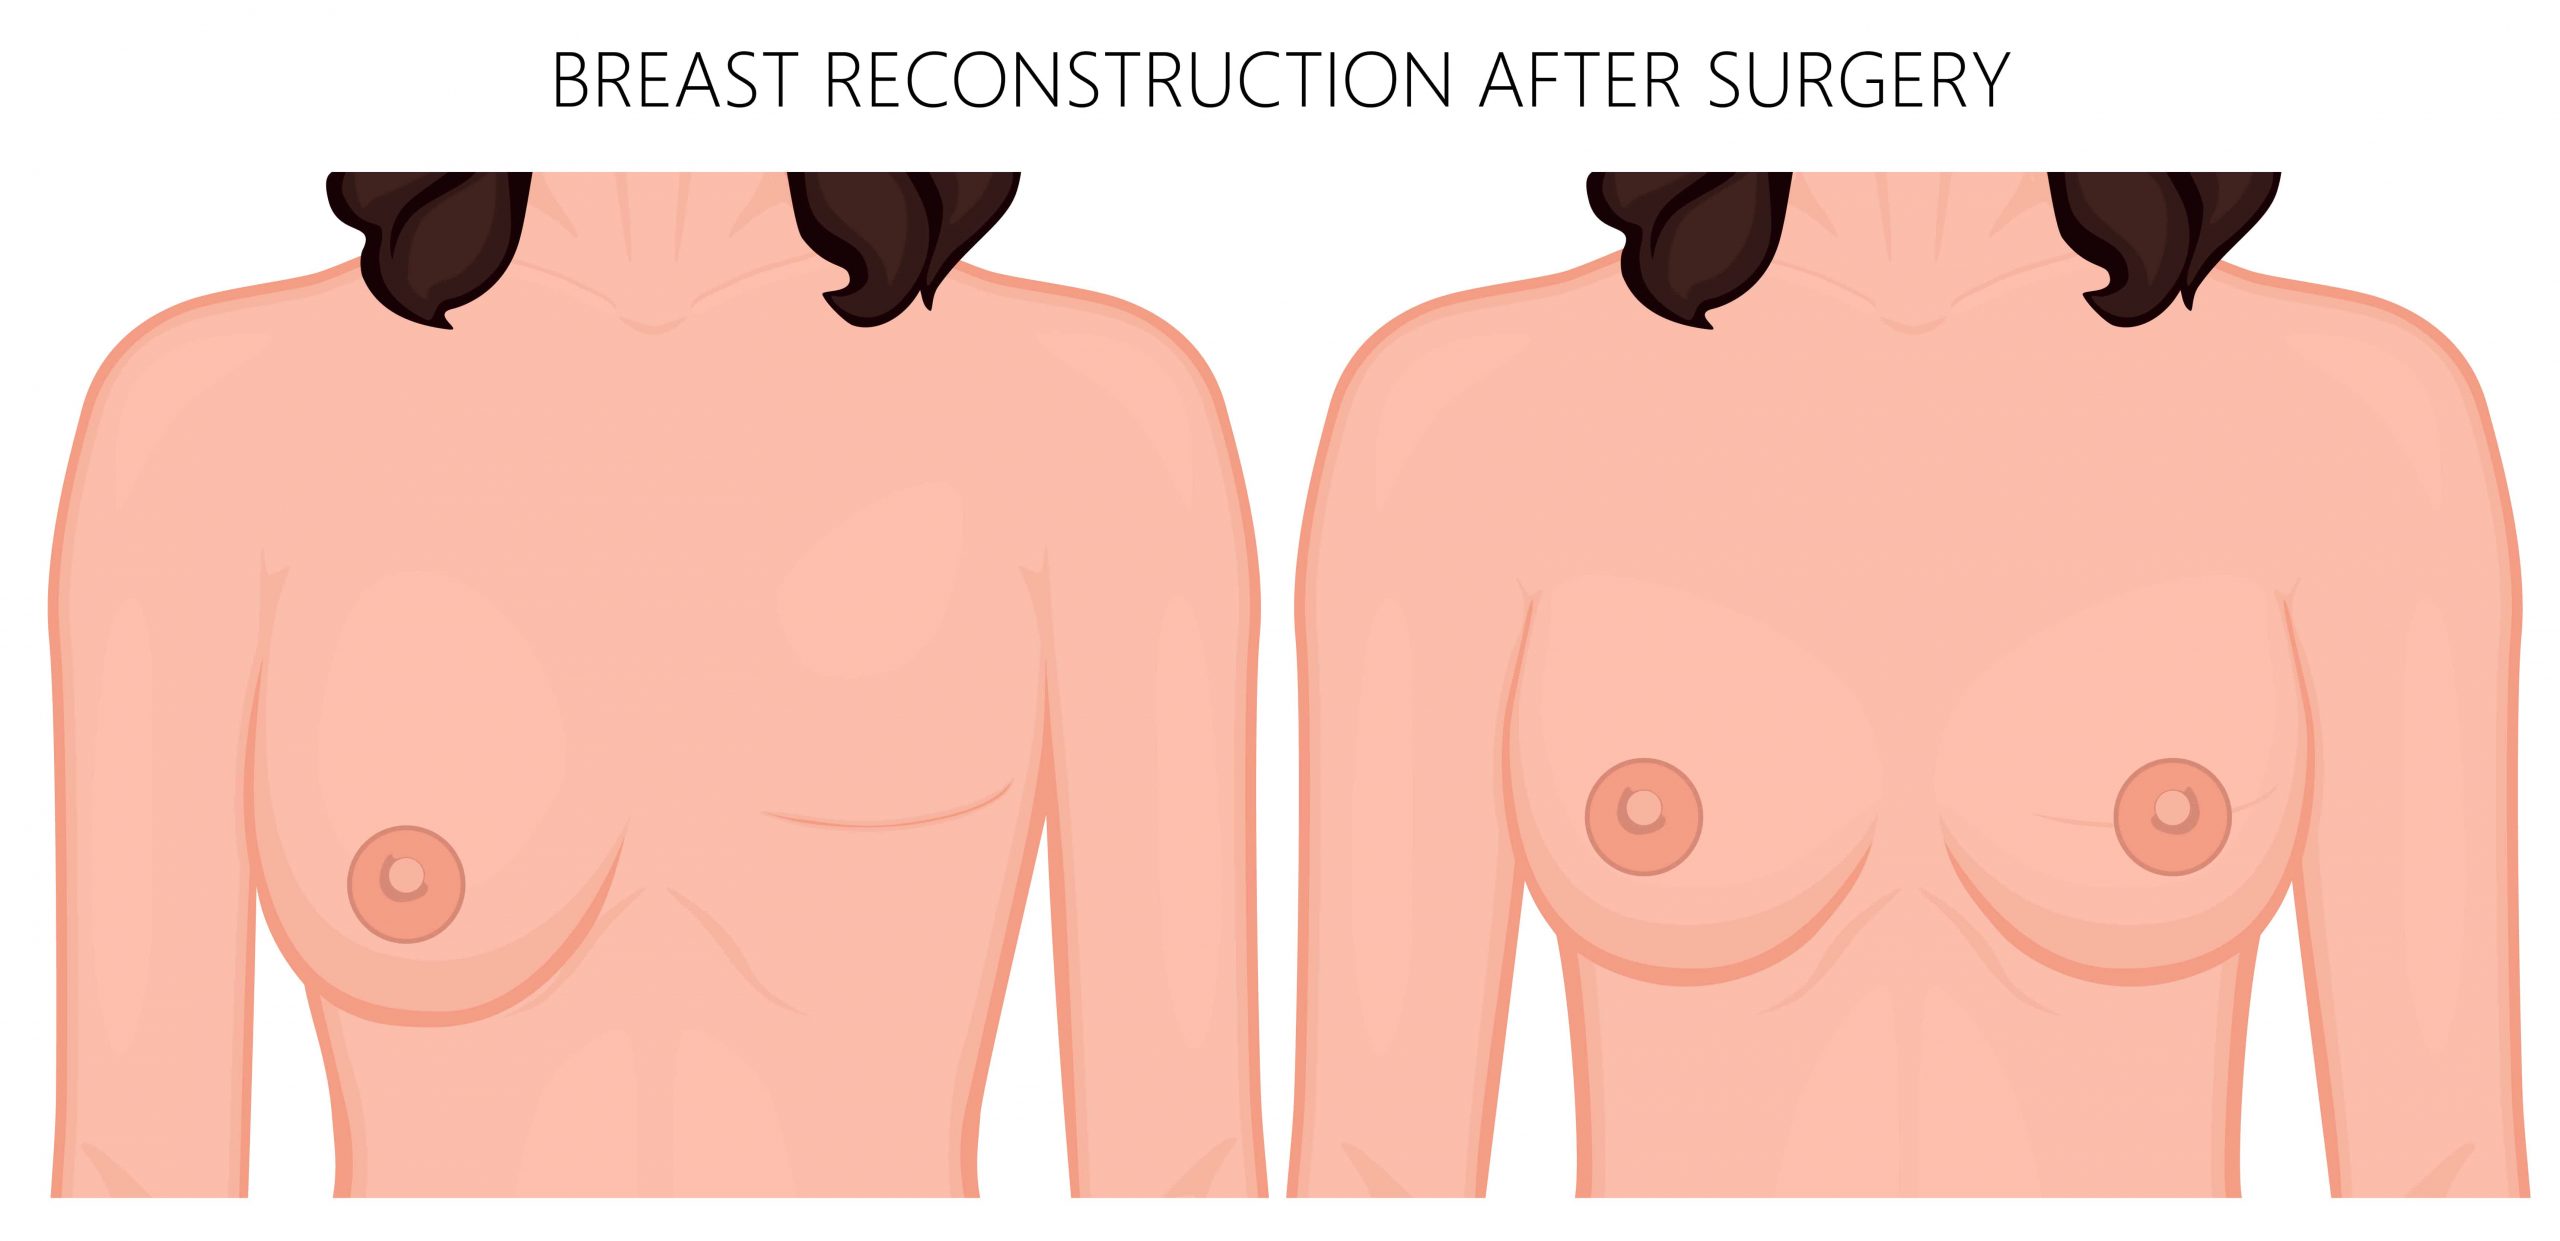 عملية إعادة بناء الثدي